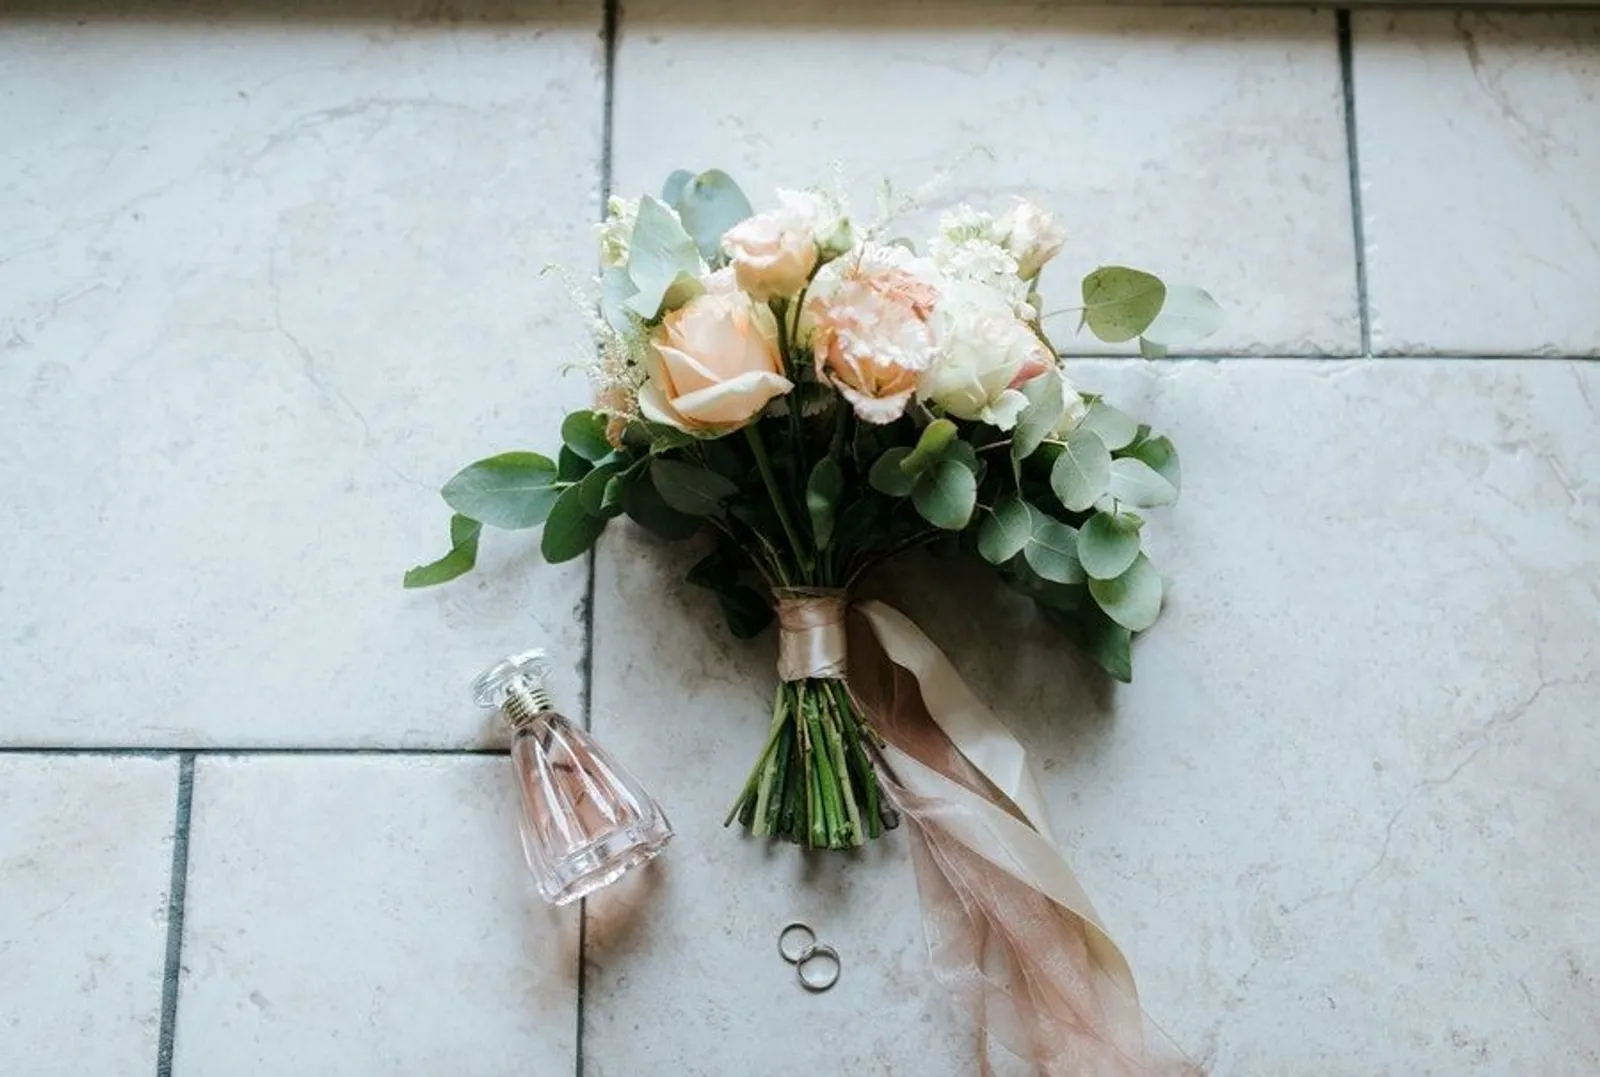 Anjuran Nikah Muda Hingga Poligami, Ini 5 Fakta Aisha Weddings